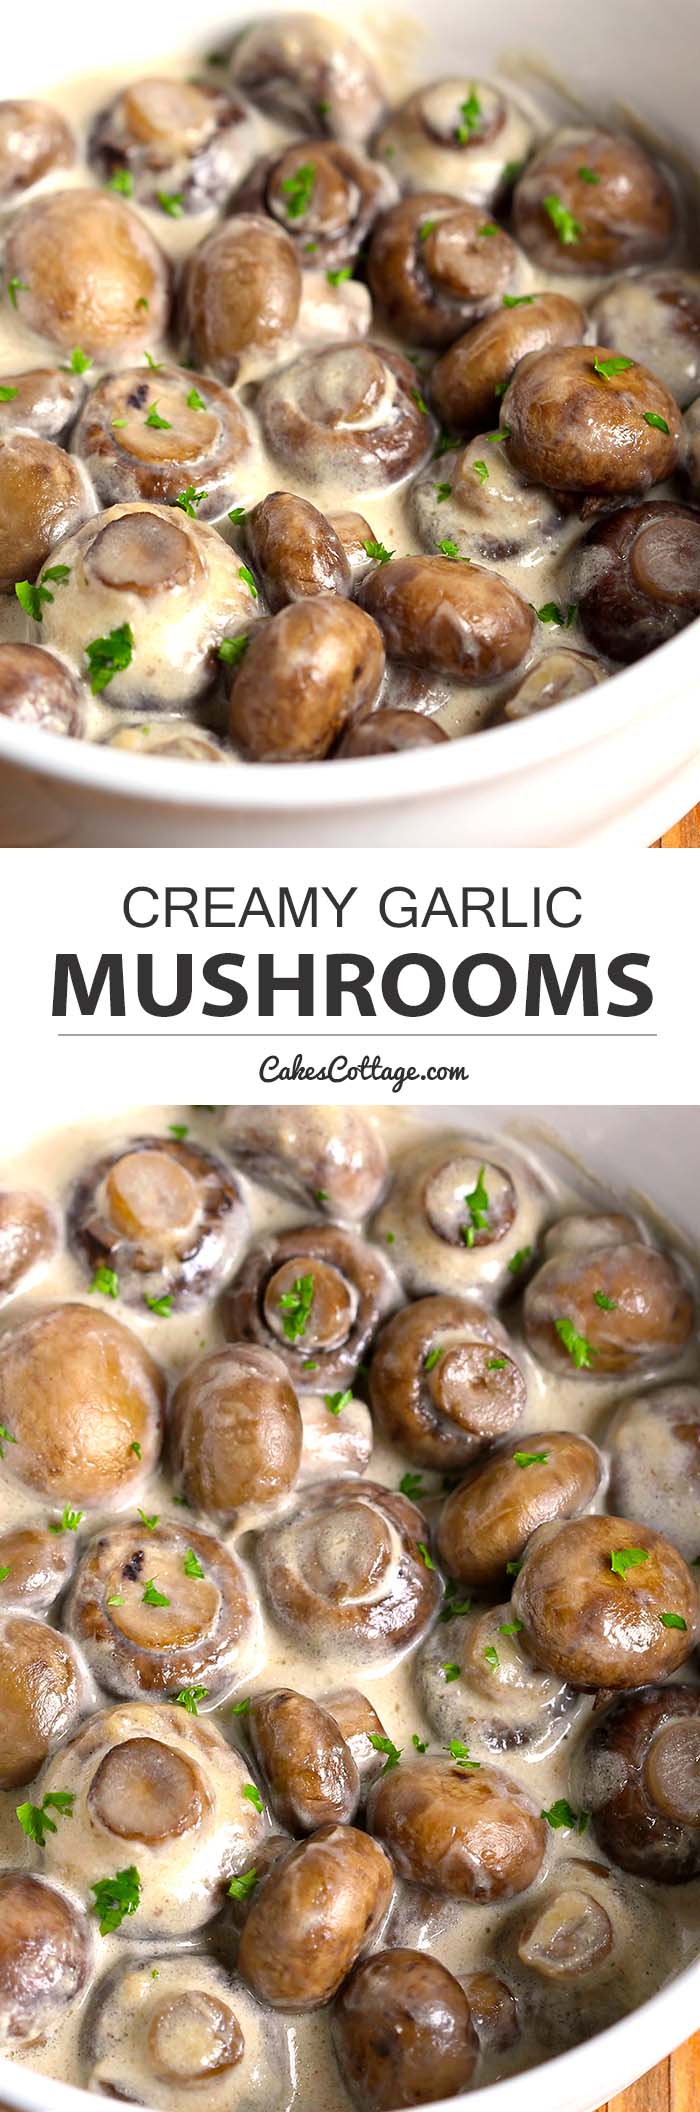 creamy-mushrooms-1c